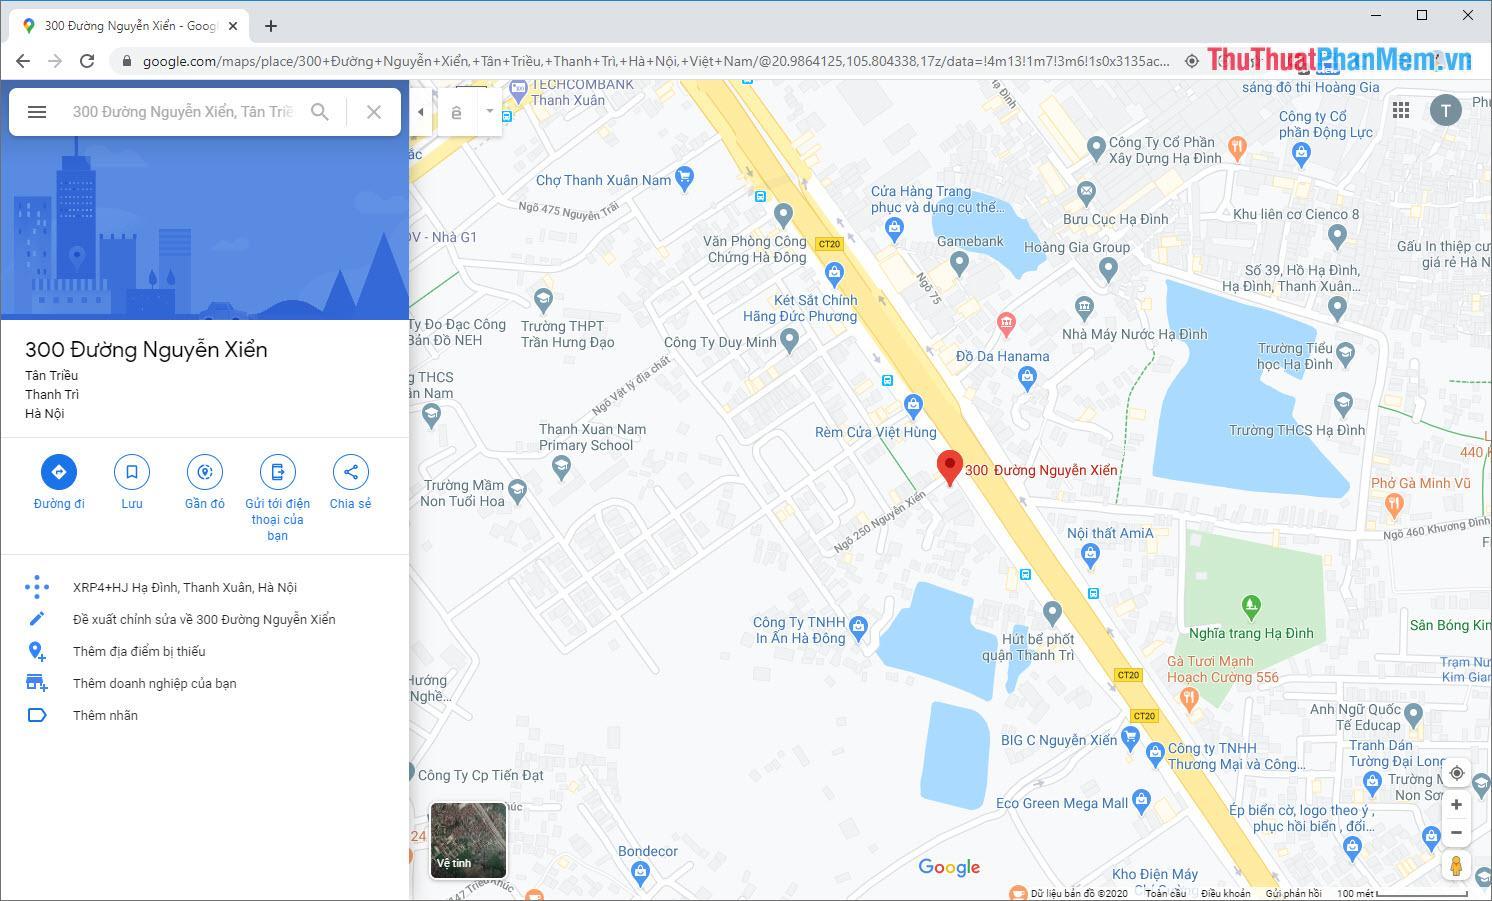 Mở Google Map và nhập địa điểm của vị trí cần lấy tọa độ